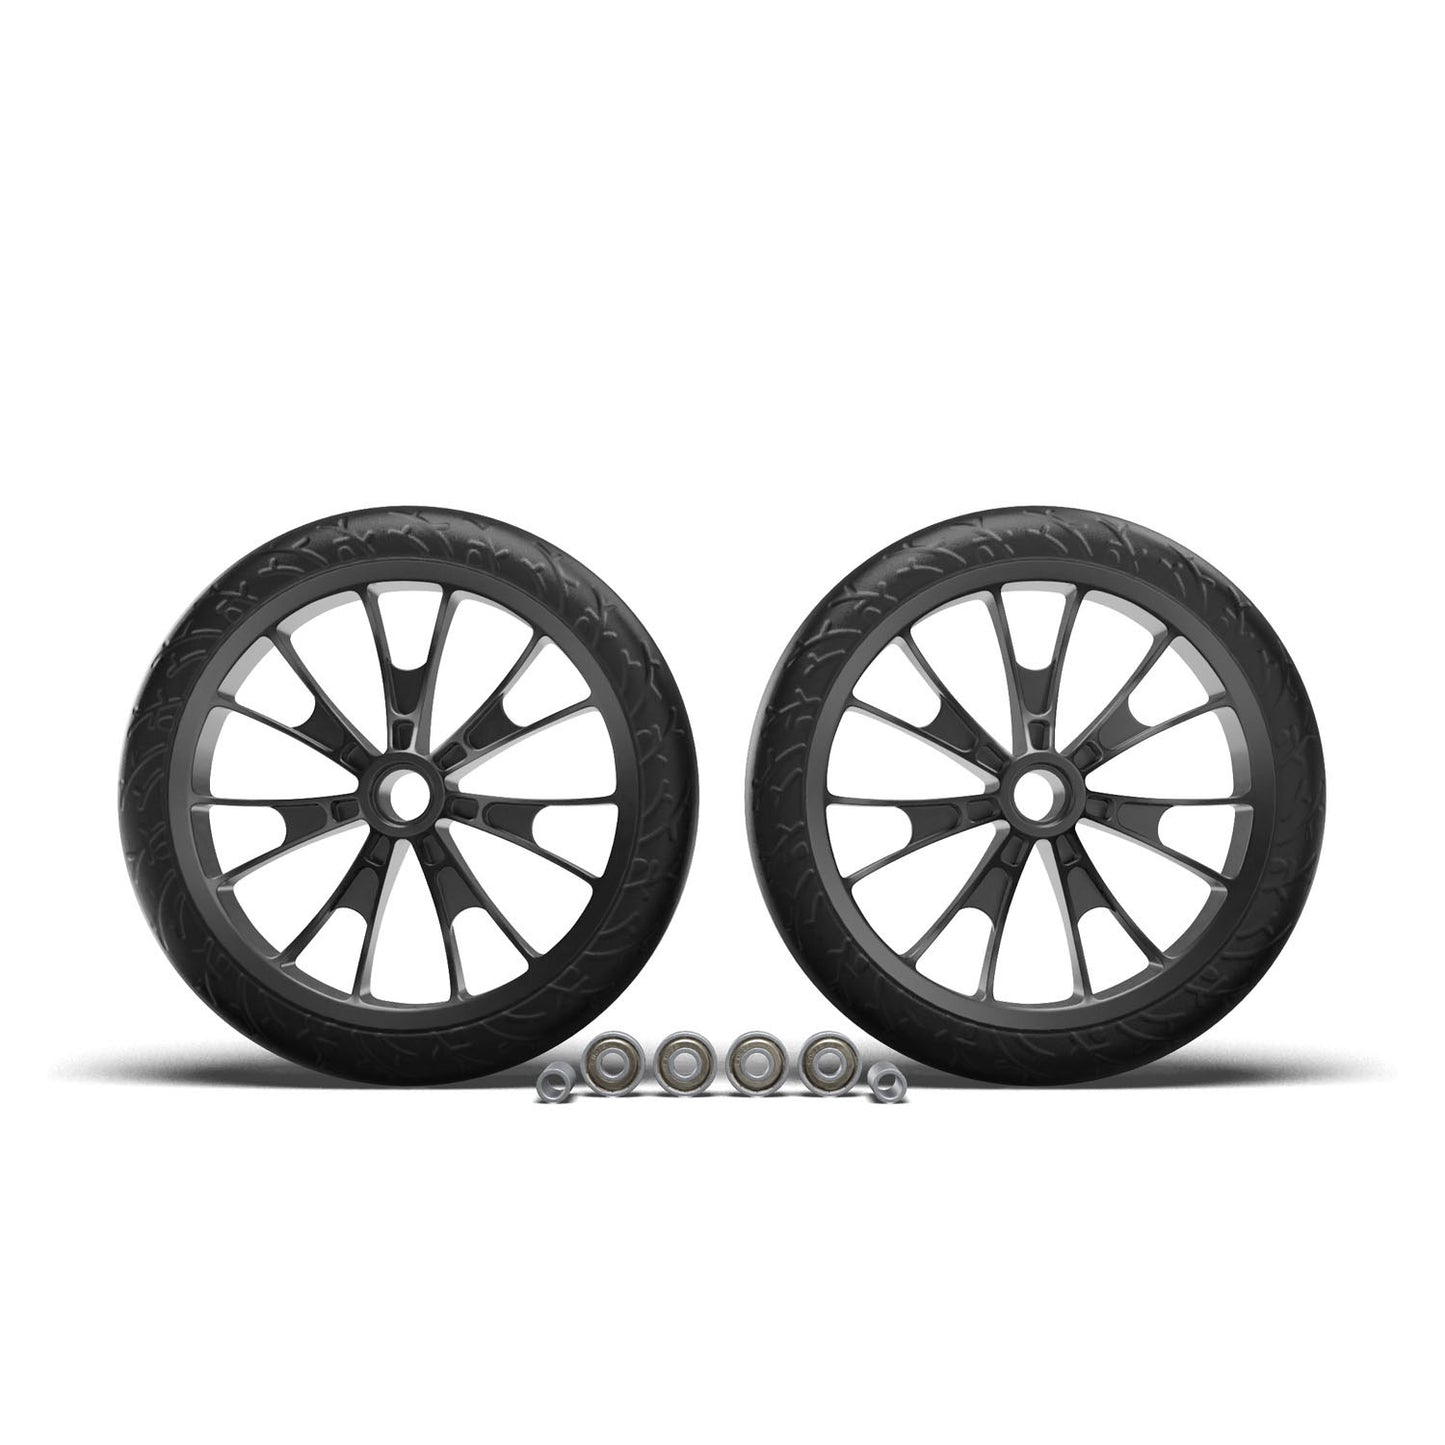 Hudora Juego de ruedas de recambio Crossover para BigWheel 205